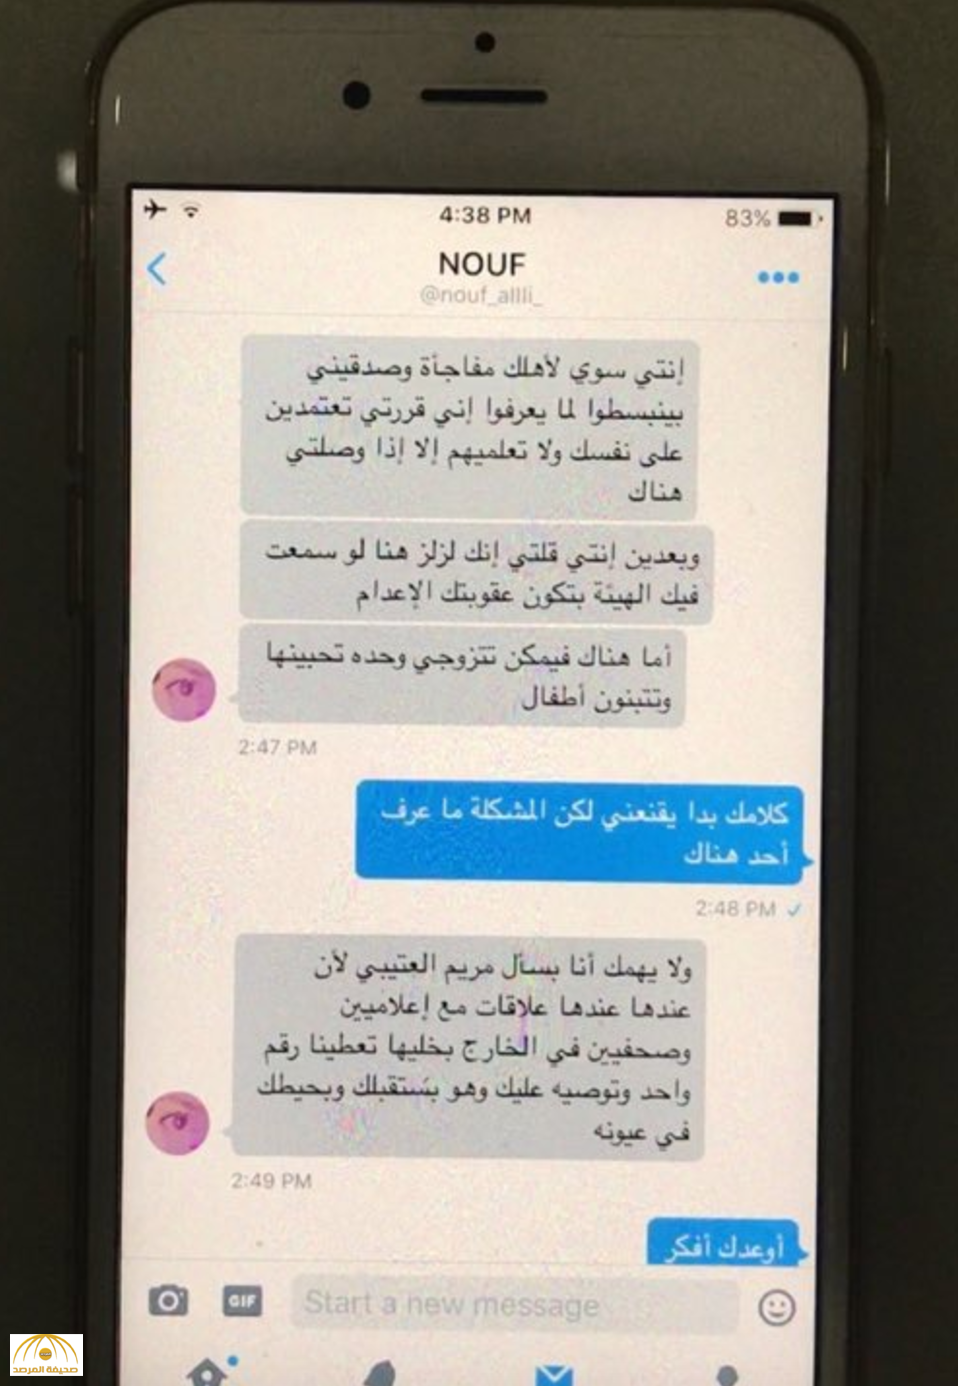 بالصور محادثة واتس اب تفضح خطة هروب فتاة سعودية إلى خارج المملكة صحيفة المرصد